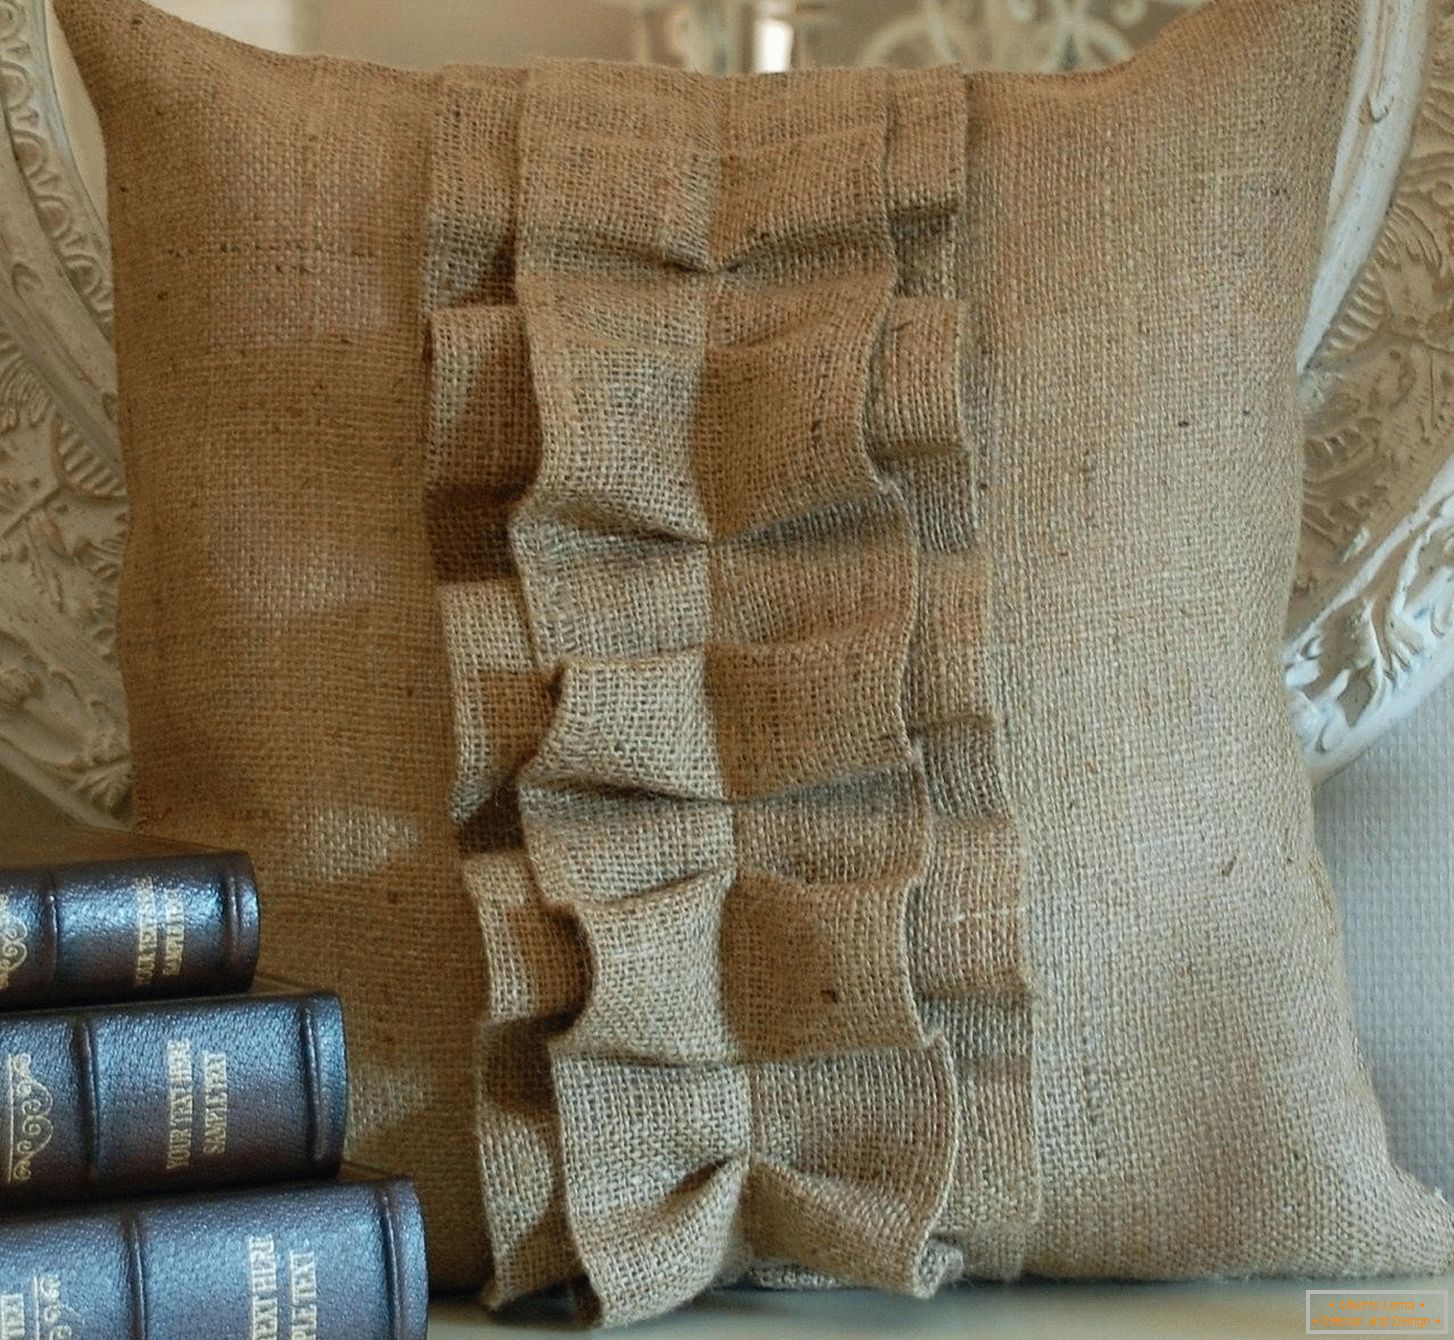 Libros y una bolsa de arpillera